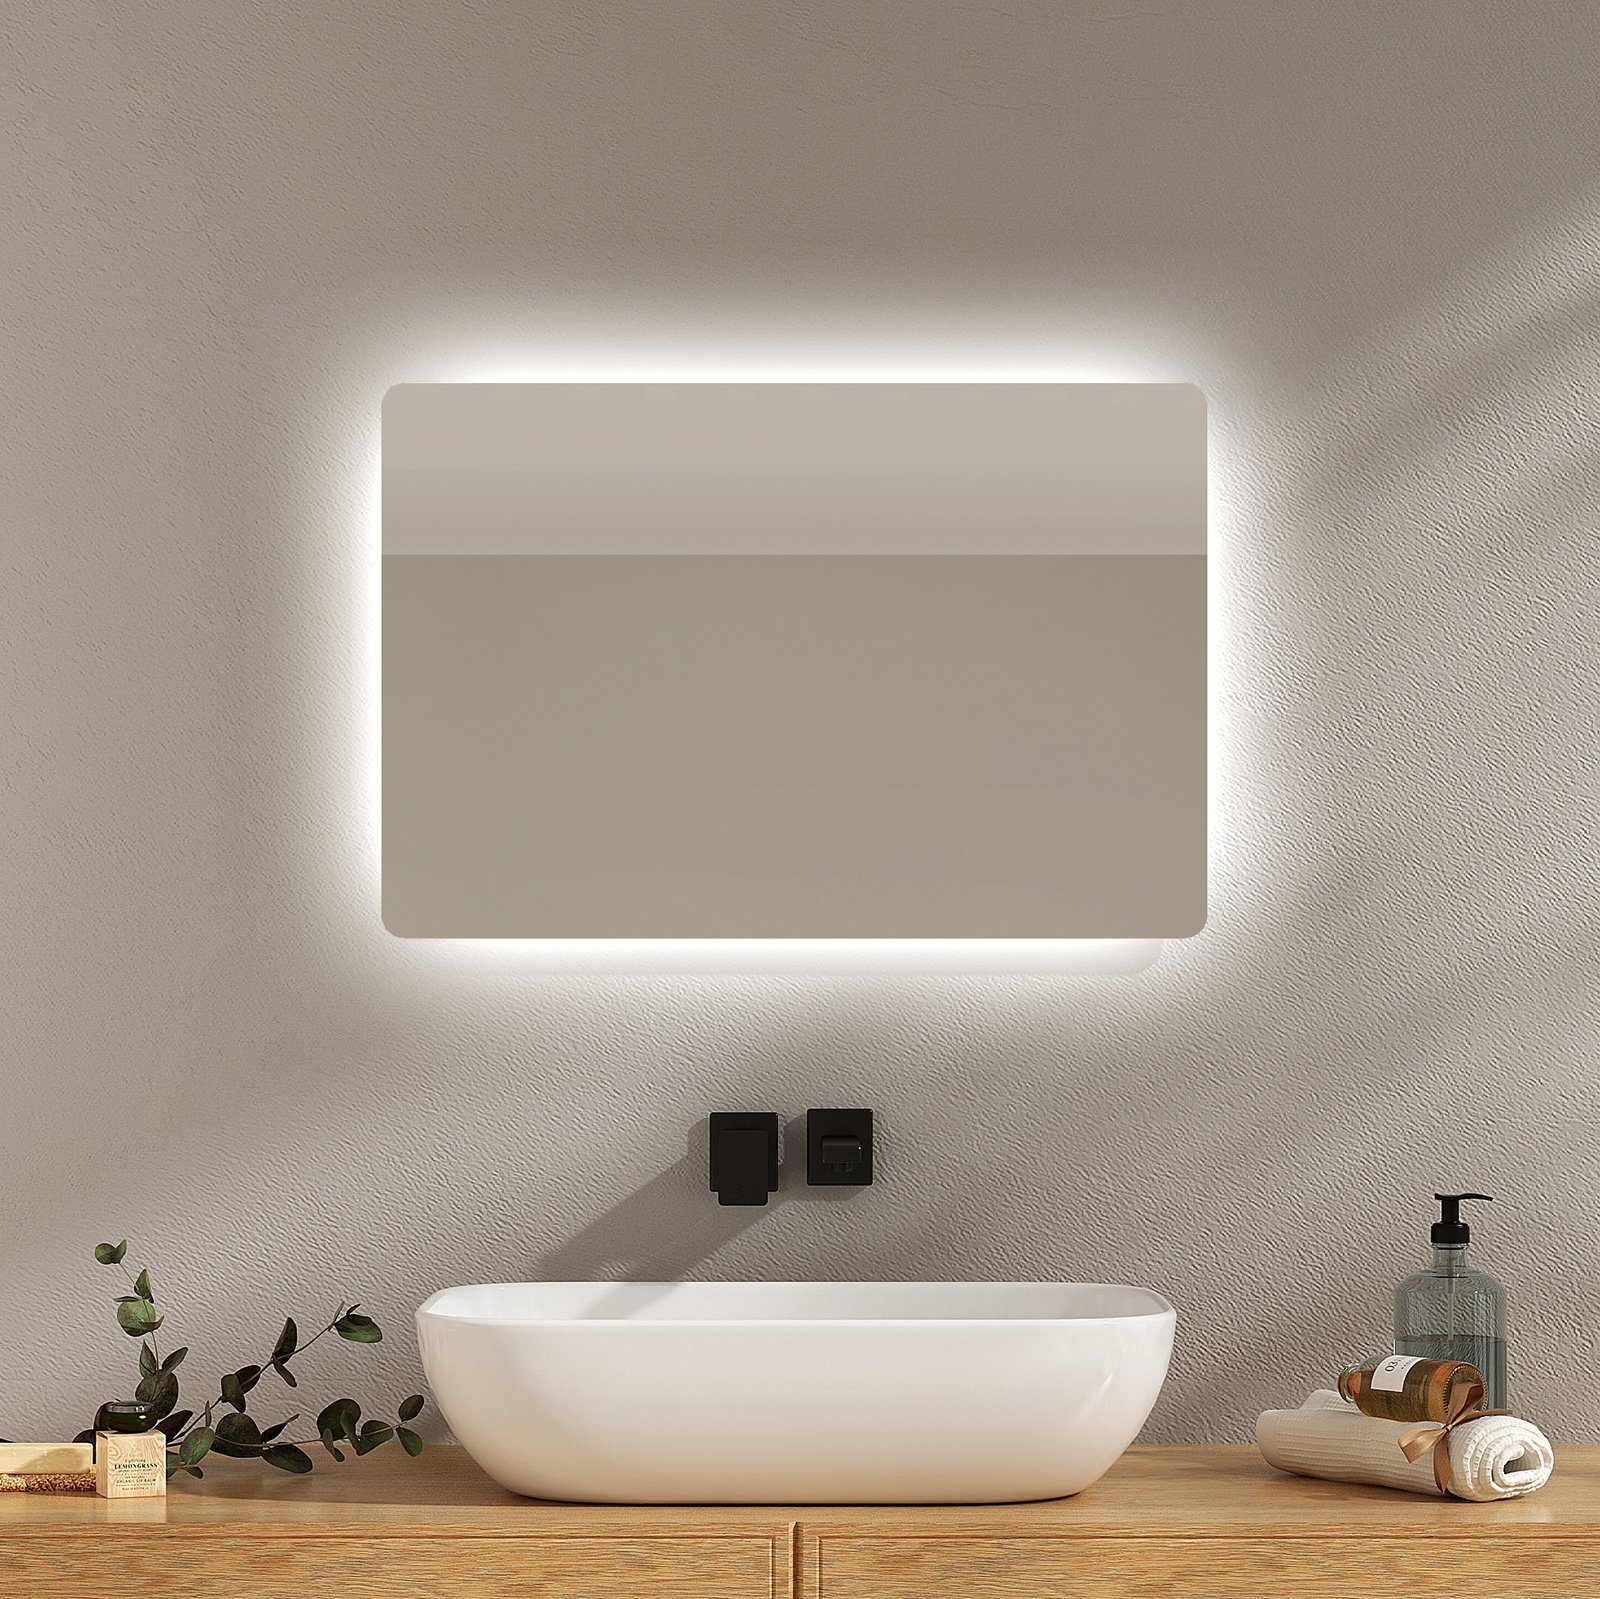 EMKE LED-Lichtspiegel Wandspiegel mit Beleuchtung LED Badspiegel Klein mit Beschlagfrei, 2 Lichtfarbe Warmweiß/Kaltweiß, Knopfschalter, IP44 | Schminkspiegel